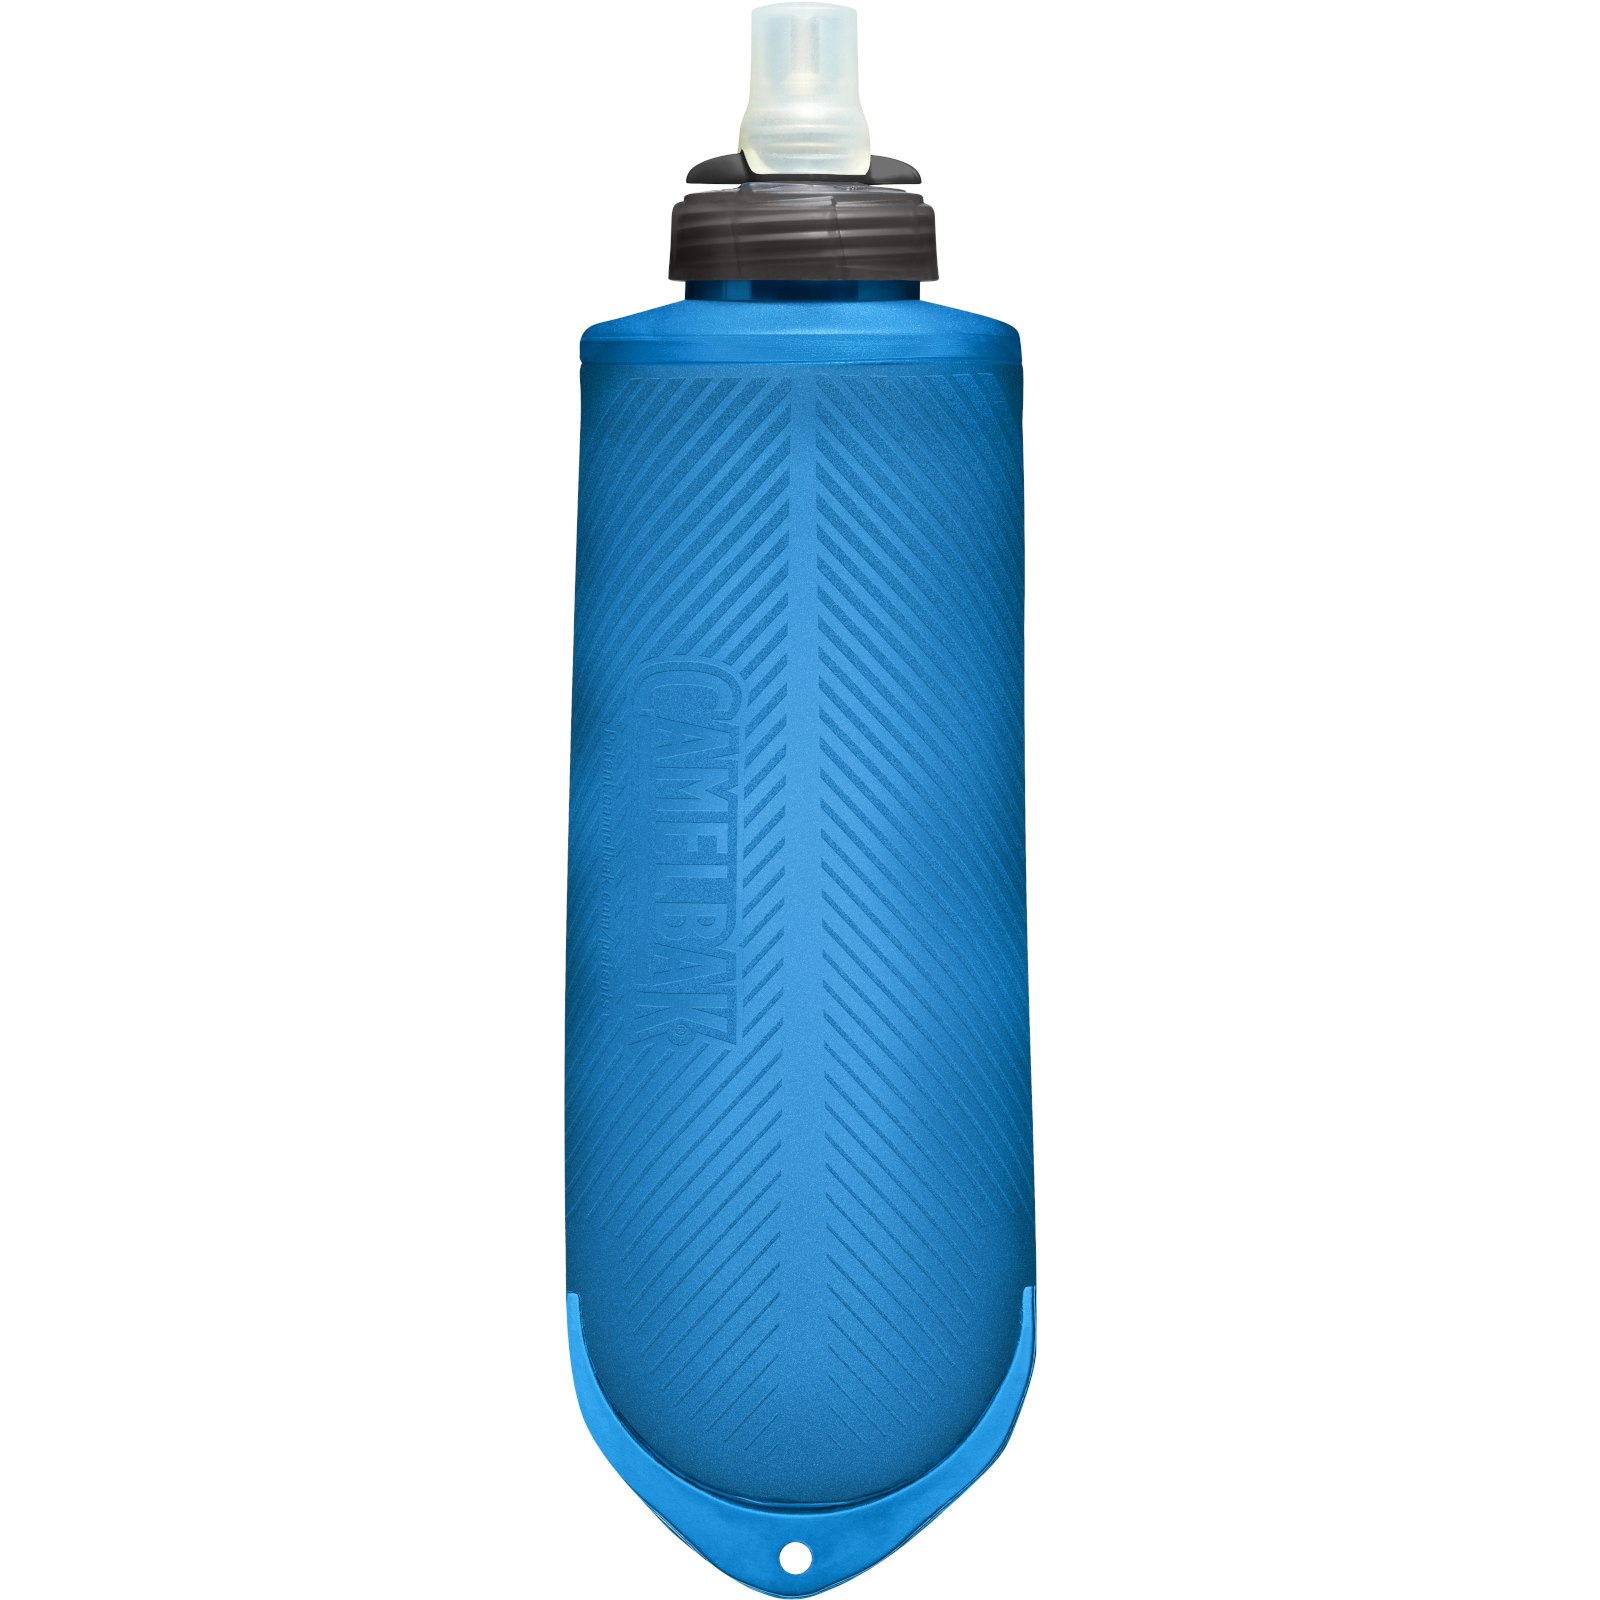 Produktbild von CamelBak Quick Stow Flask Trinkflasche 620ml - Blue